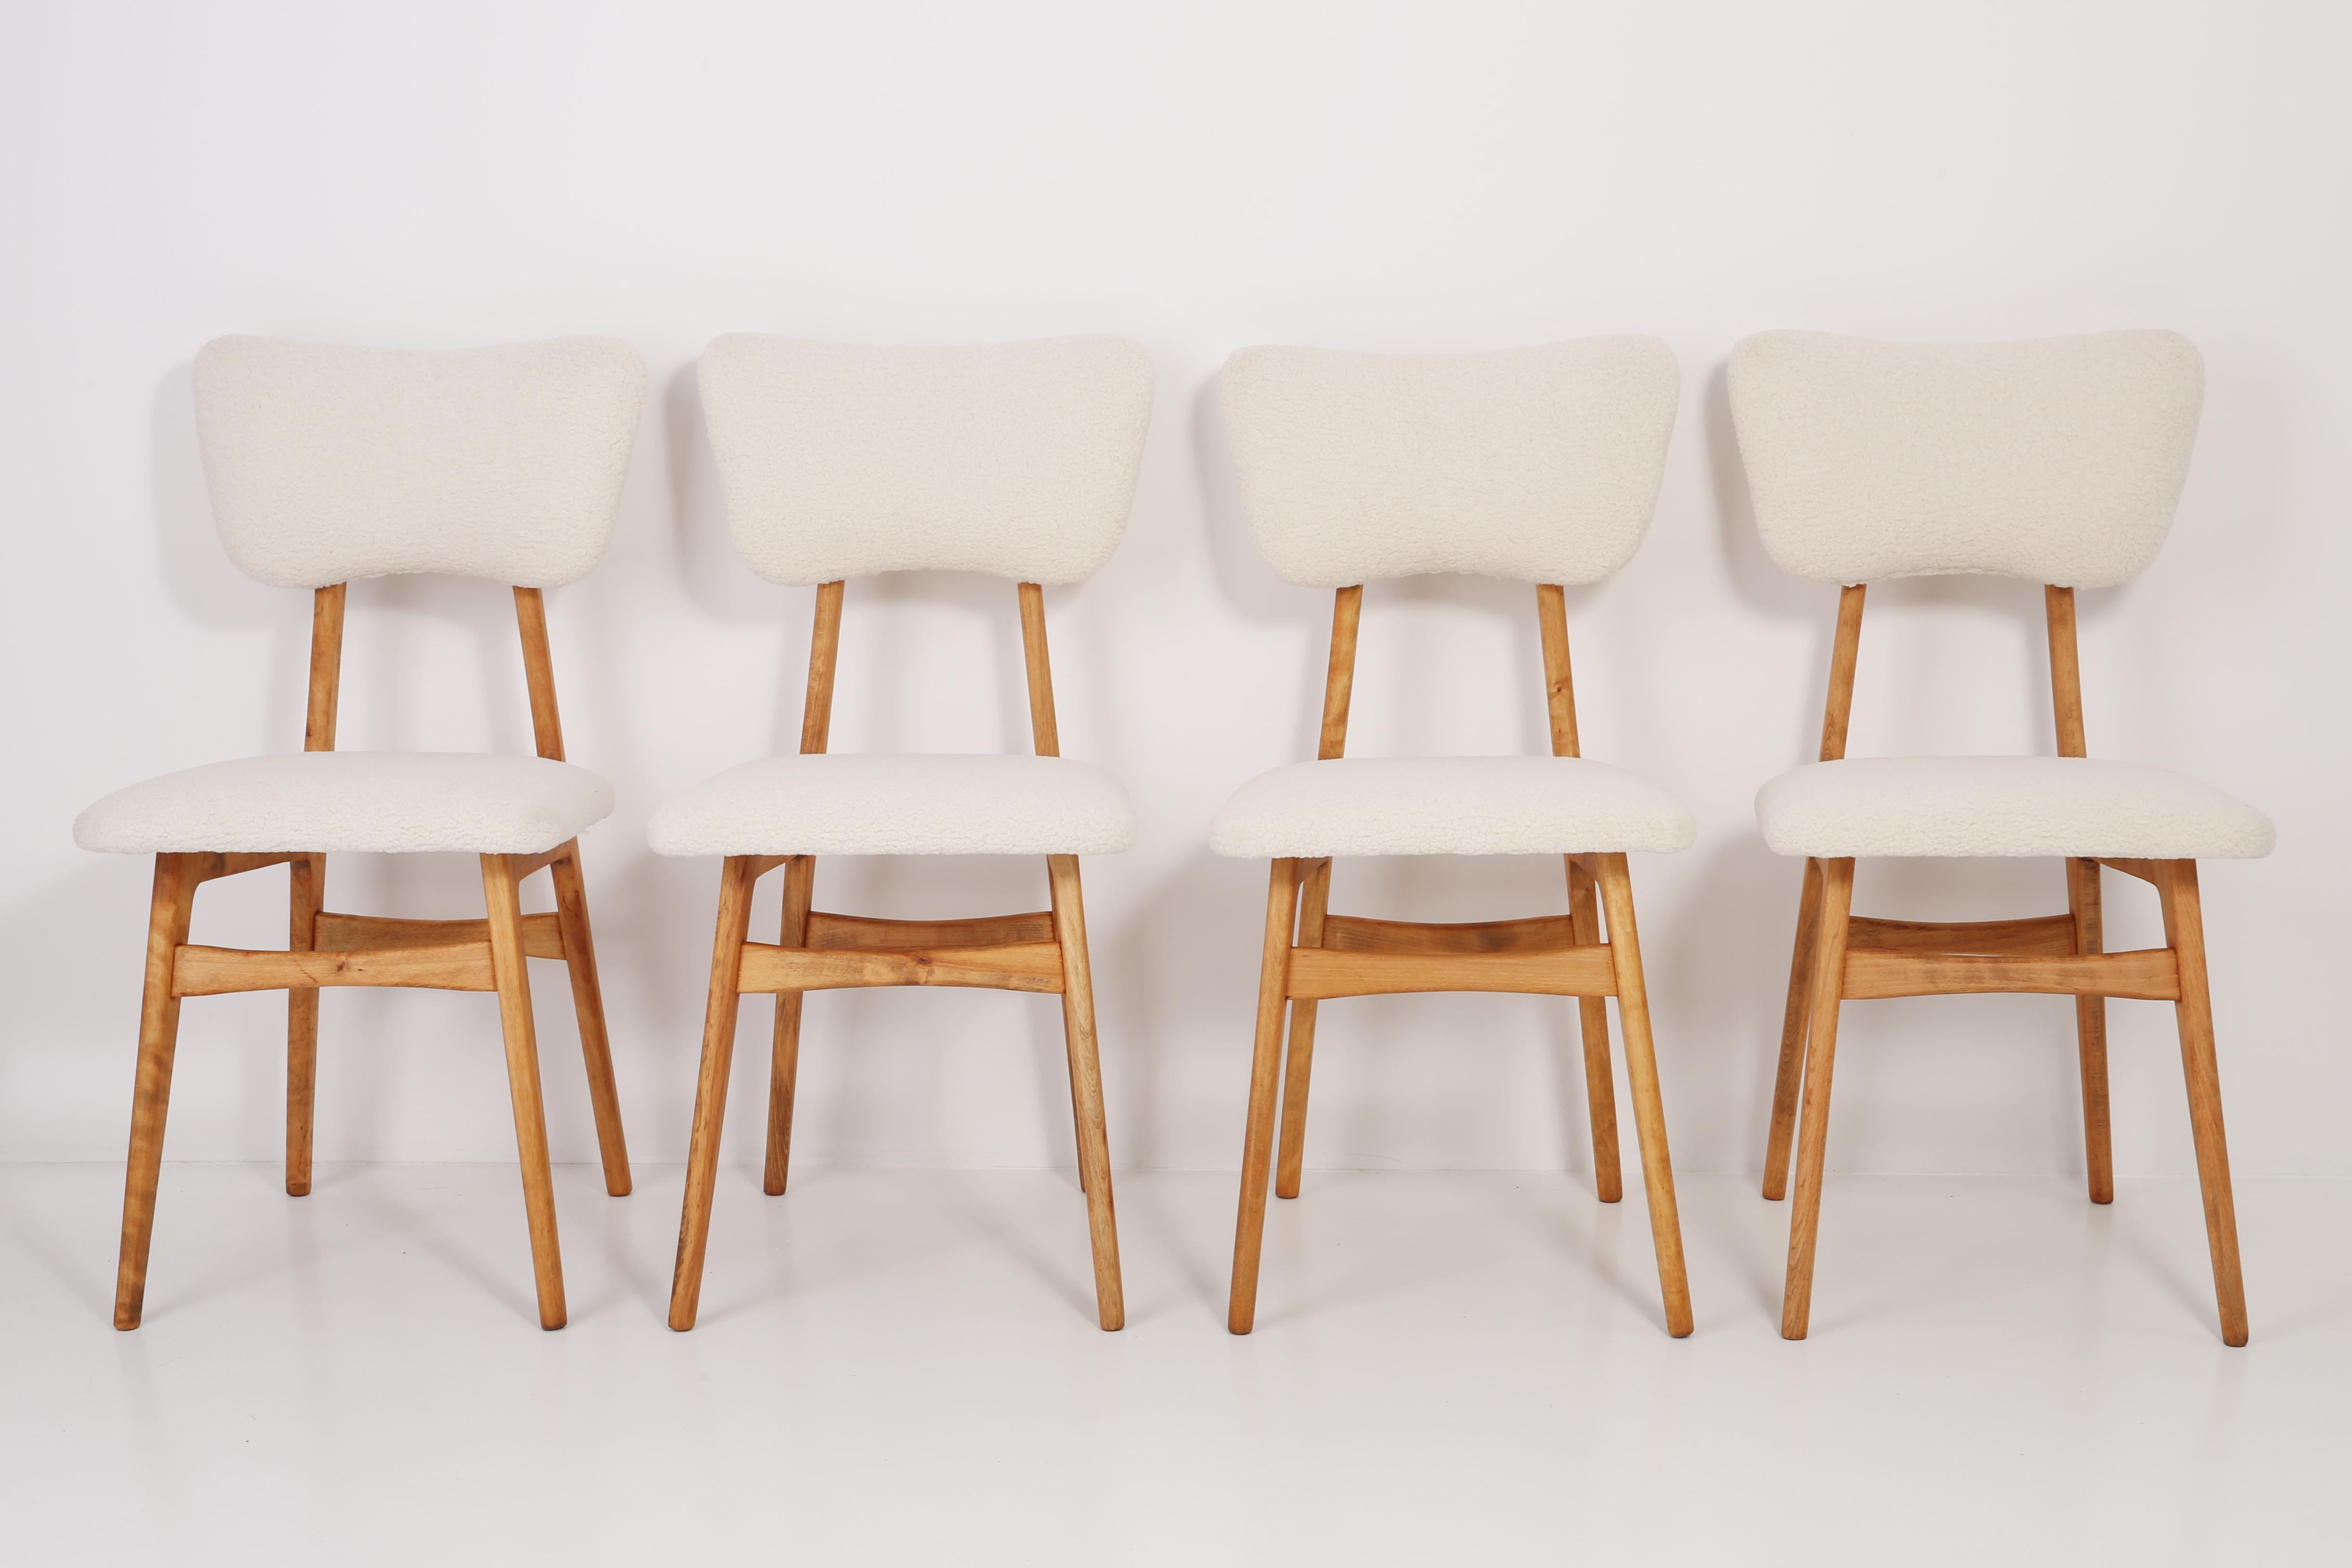 Stühle entworfen von Prof. Rajmund Halas. Hergestellt aus Buchenholz. Der Stuhl wurde komplett neu gepolstert, die Holzarbeiten wurden aufgefrischt. Sitz und Rückenlehne sind mit cremefarbenem, strapazierfähigem und angenehm zu berührendem